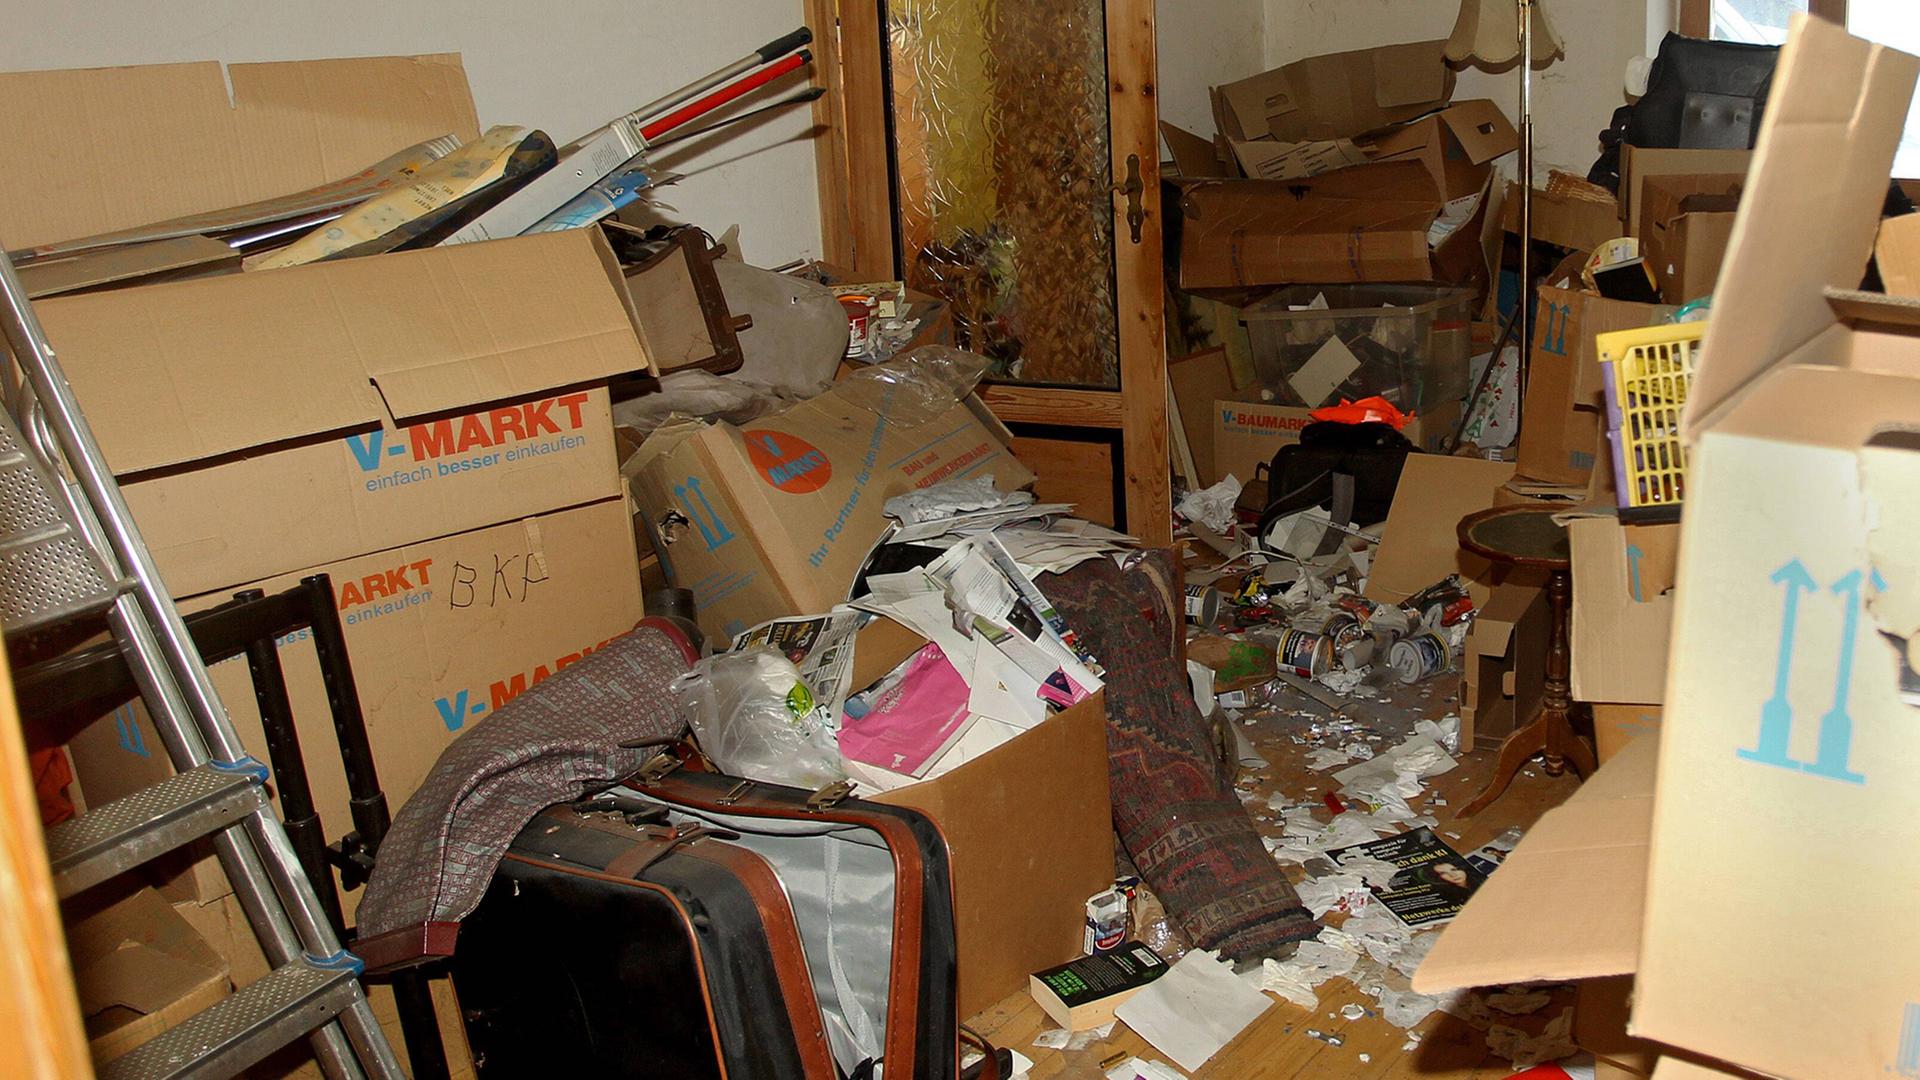 Eine vermüllte Wohnung: Kisten, eine Leiter, ein alter Koffer und viele weitere Gegenstände sind auf dem Boden zu sehen.